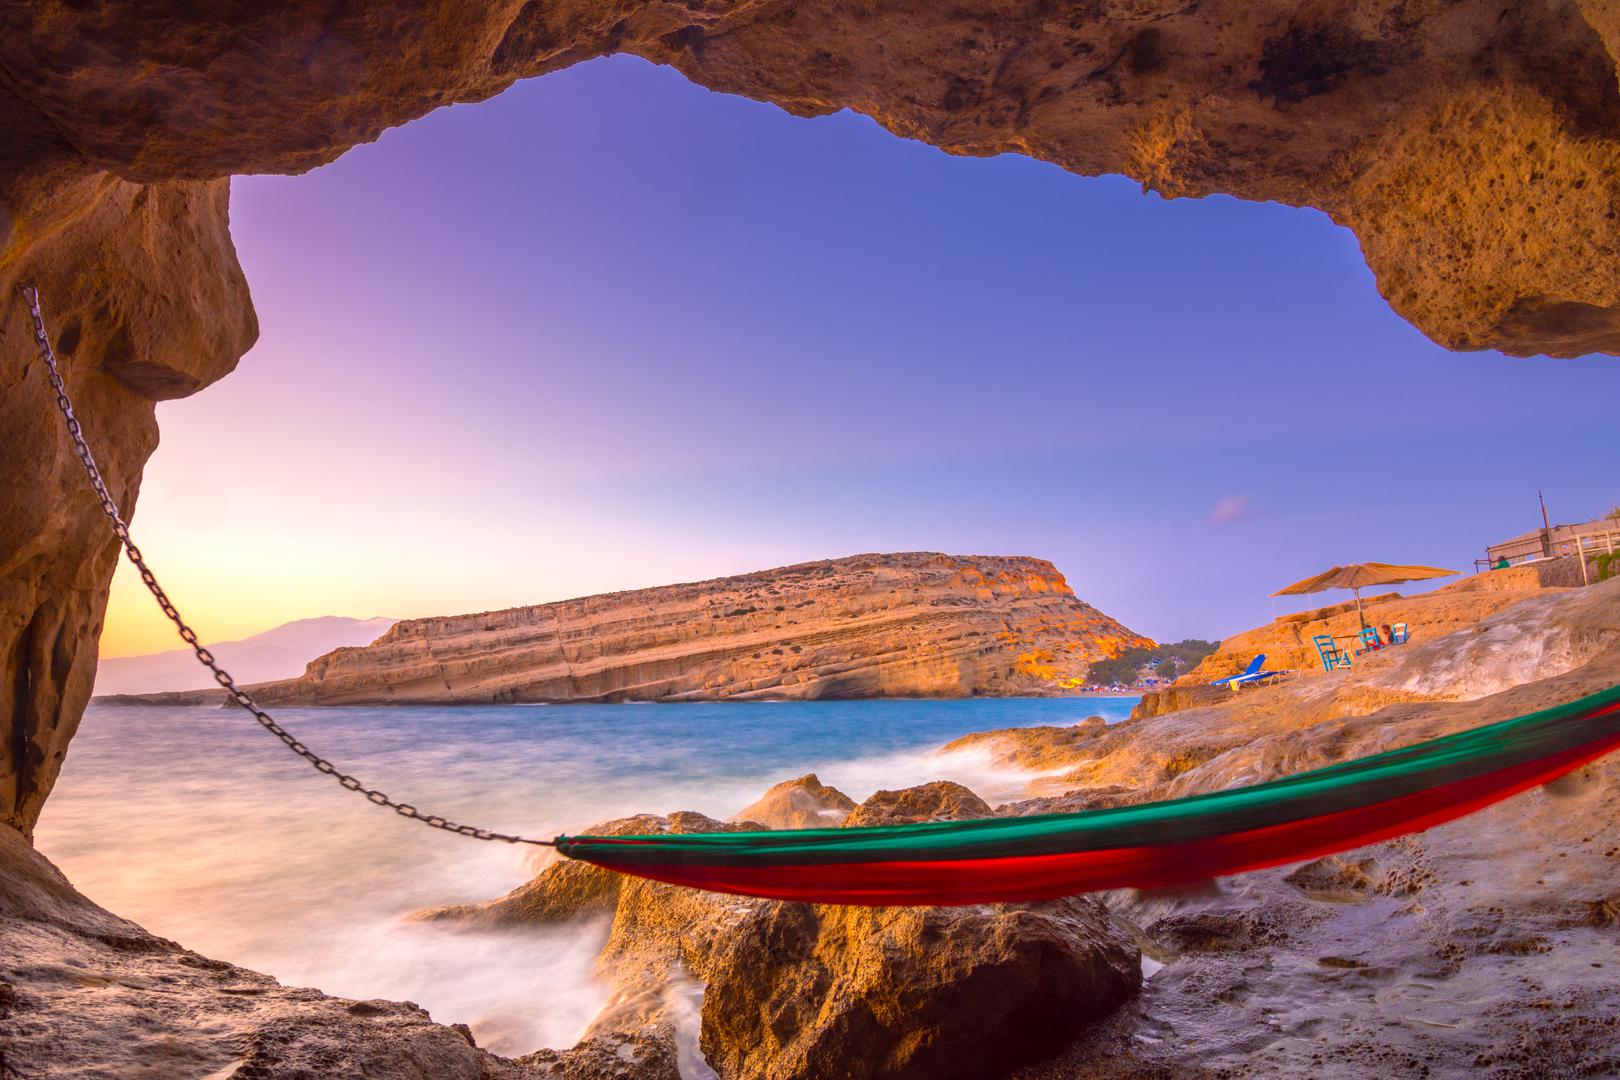 Crvena plaža, Kreta, Grčka: Ova skrovita obala na južnoj strani Krete je vruća točka za golo sunčanje u Grčkoj. Nazvana po pijesku i liticama oker boje, do Crvene plaže (ili Kokkini Ammos) dolazi se 20-minutnim pješačenjem od Matale ili vrlo kratkom vožnjom čamcem od seoske obale.